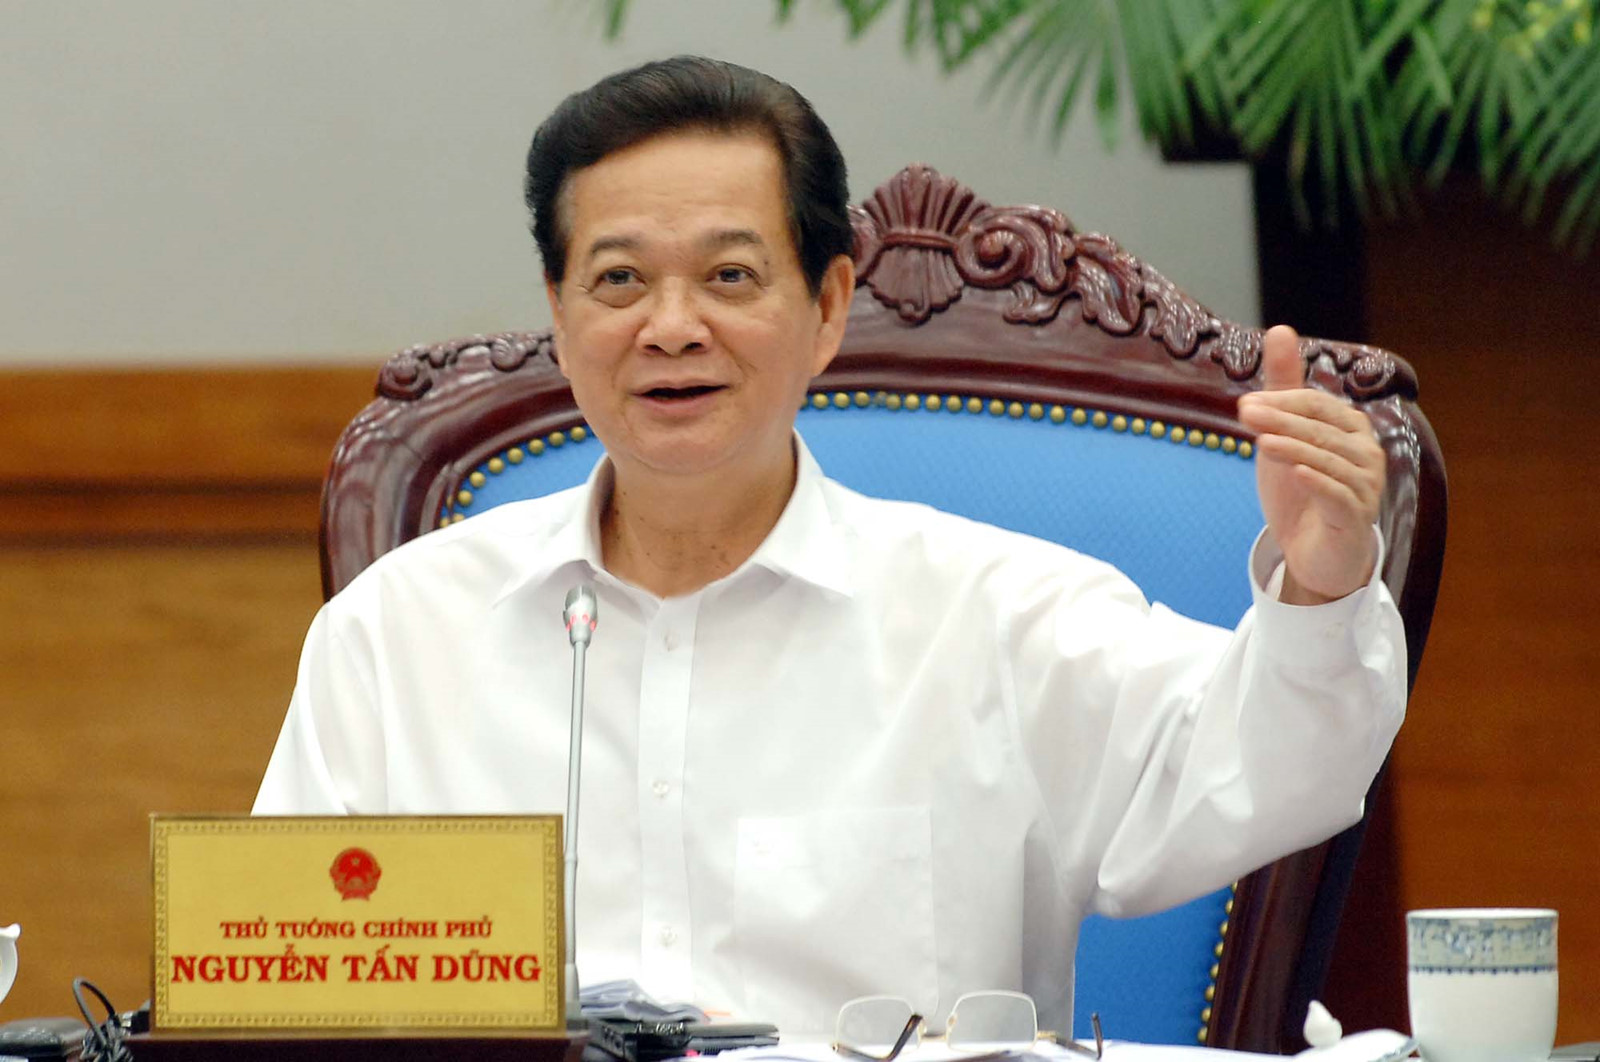 Thủ tướng Chính phủ Nguyễn Tấn Dũng - Ảnh: Ngọc Thắng